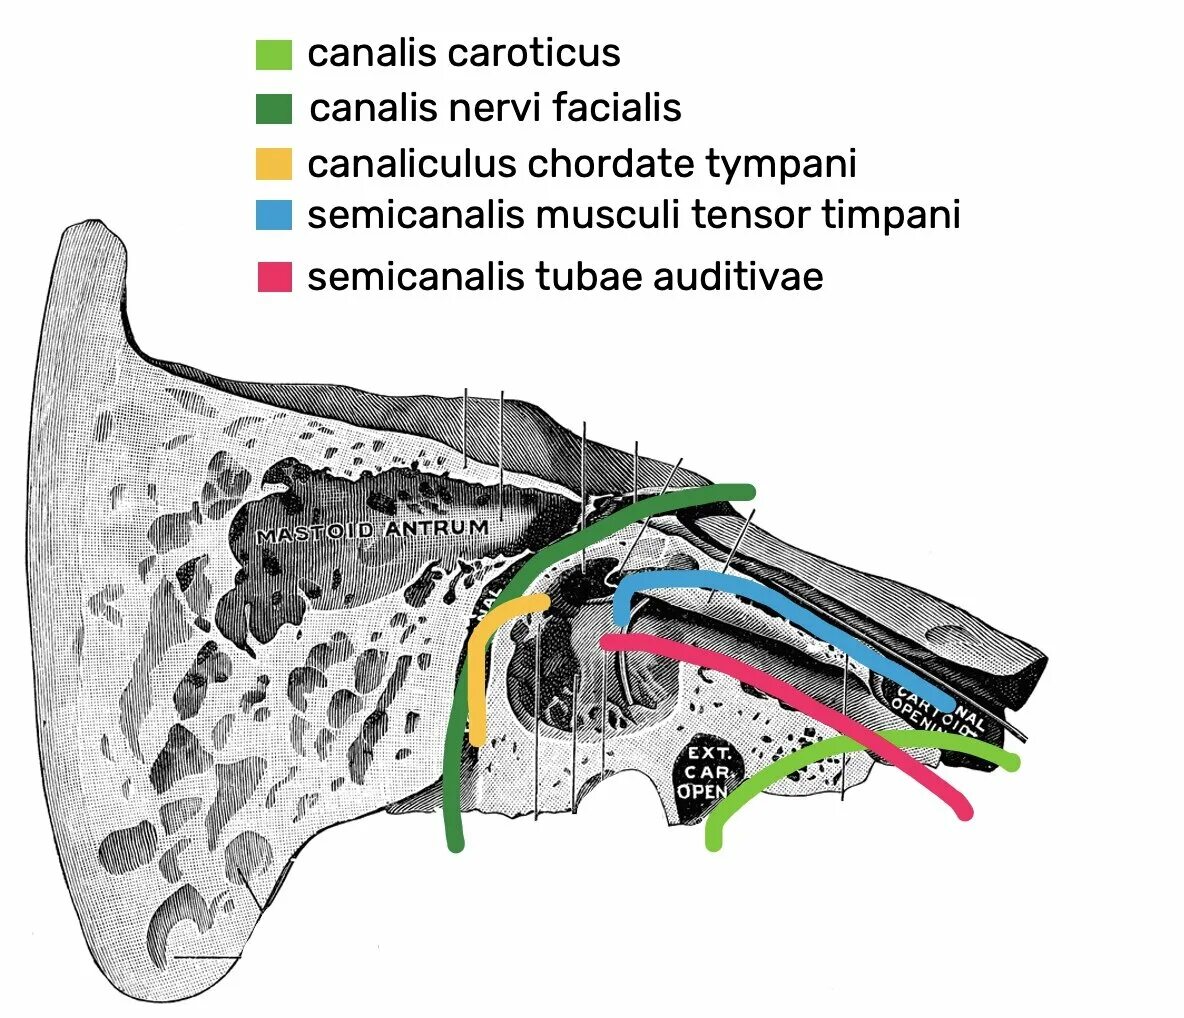 Мышечно-трубный канал височной кости. Canalis nervi Facialis на височной кости. Каналис супинаториус. Барабанный каналец височной кости на черепе.